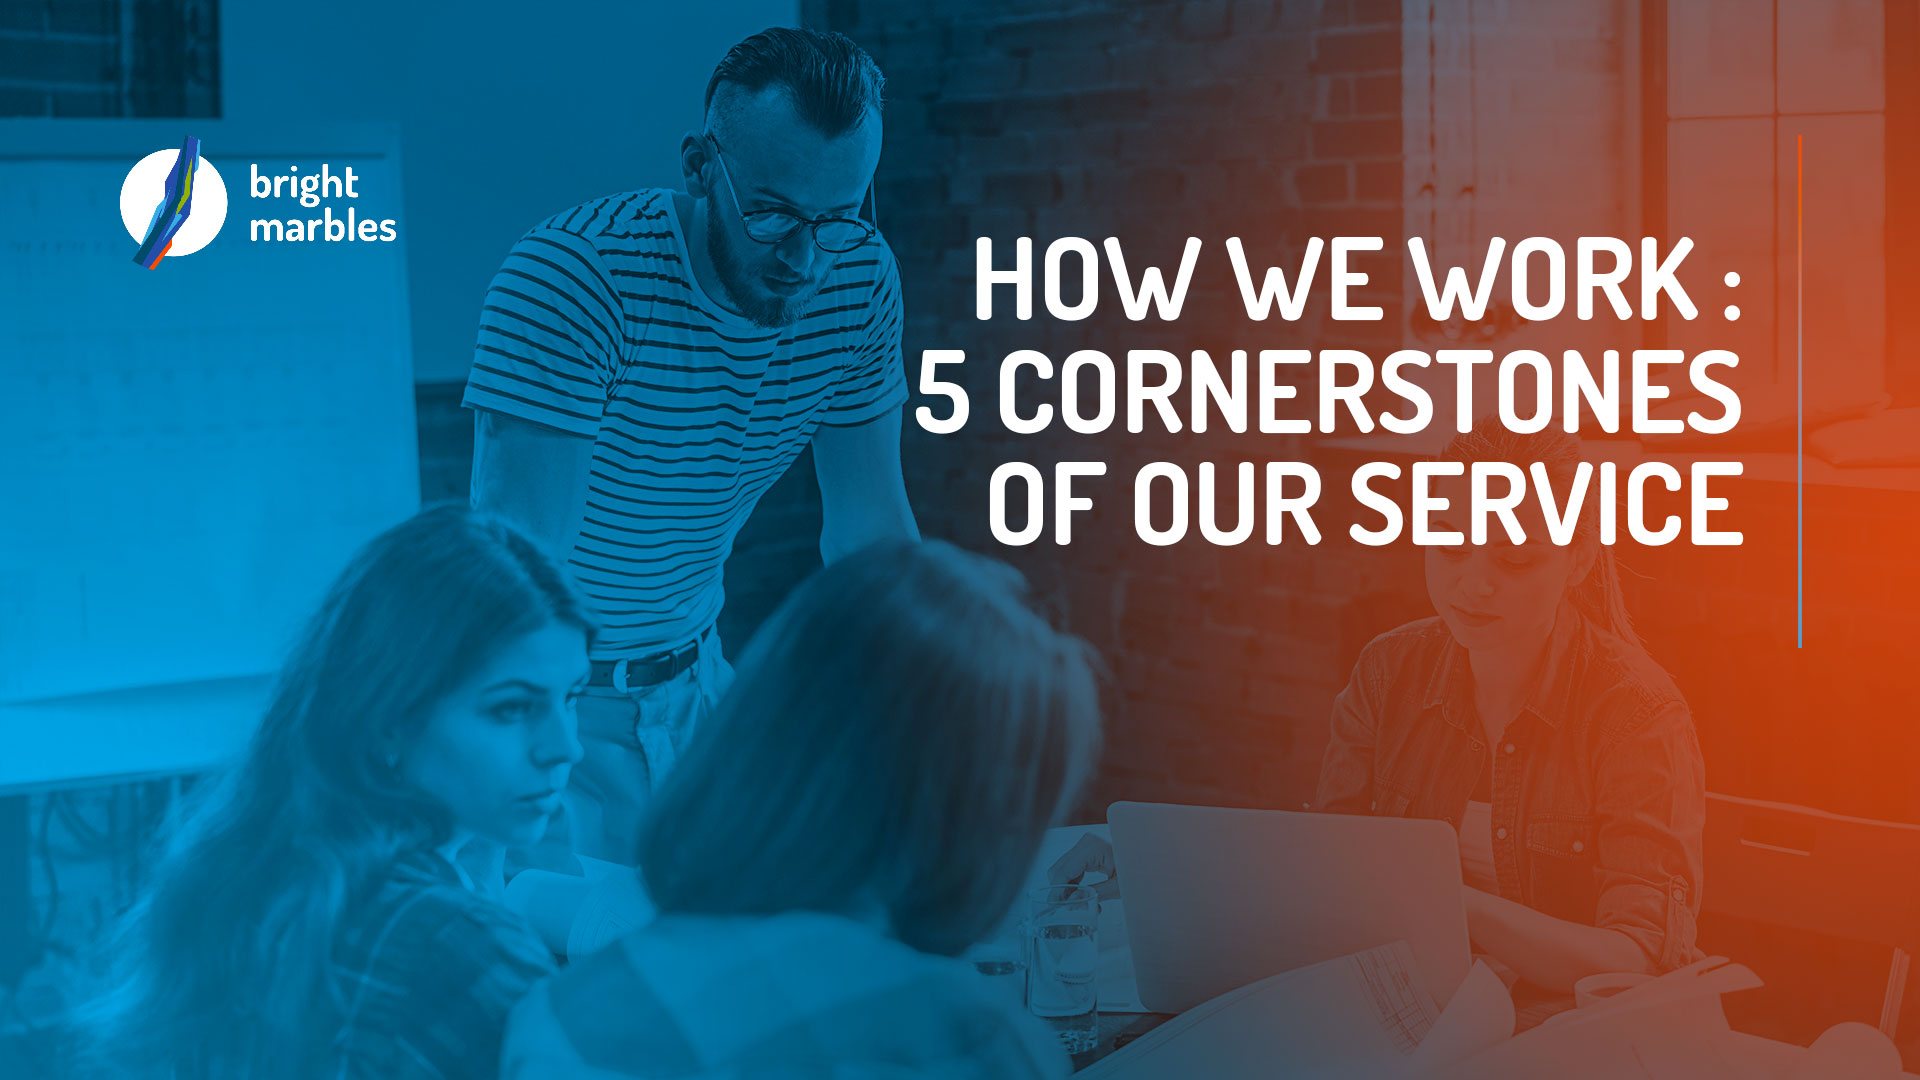 How we work: 5 cornerstones